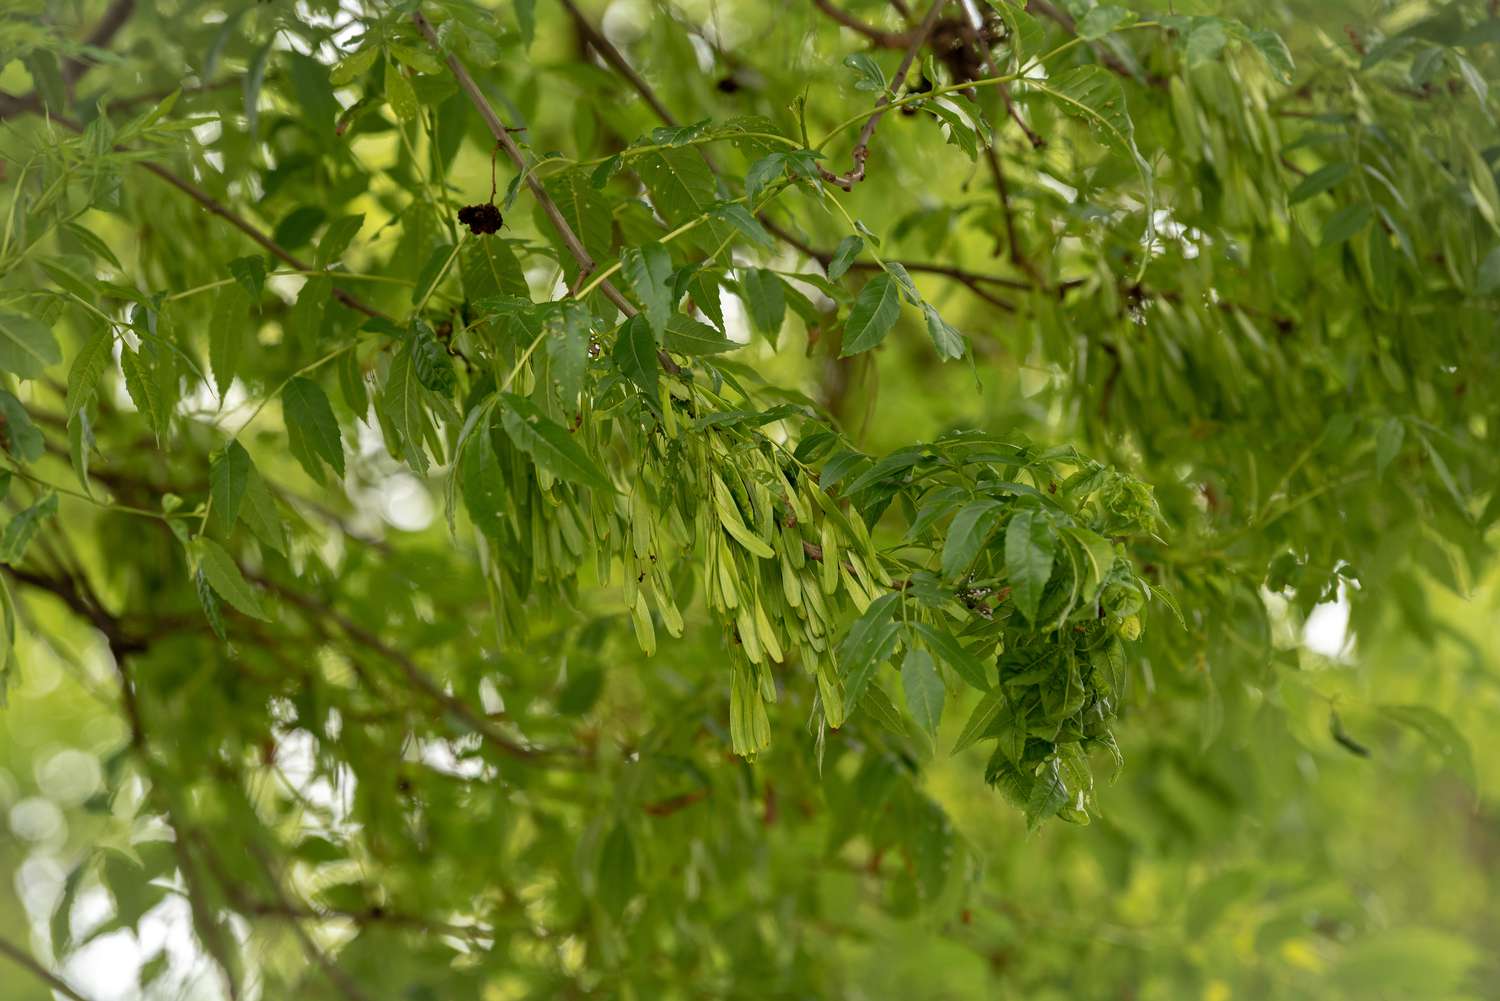 Zweige der Europäischen Esche mit kleinen hellgrünen neuen Blättern, umgeben von mittelgrünen Blättern